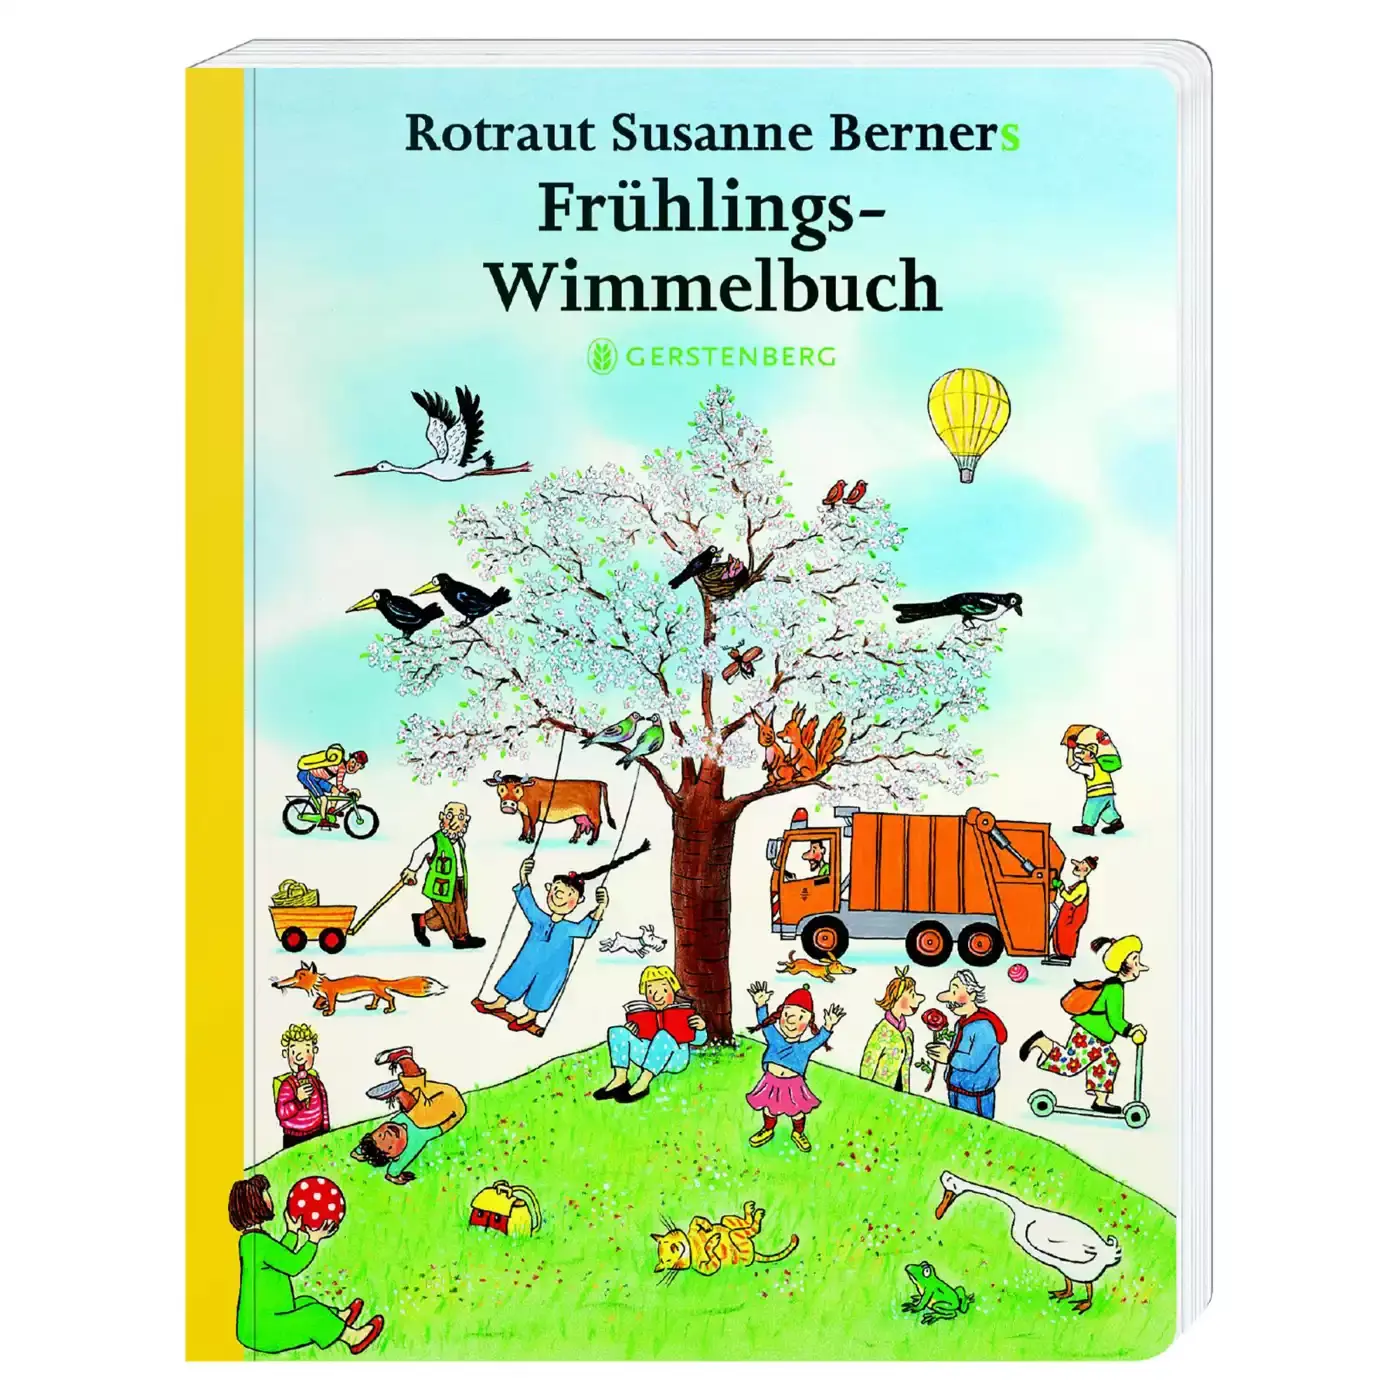 Frühlings-Wimmelbuch Gerstenberg 2000580037807 1